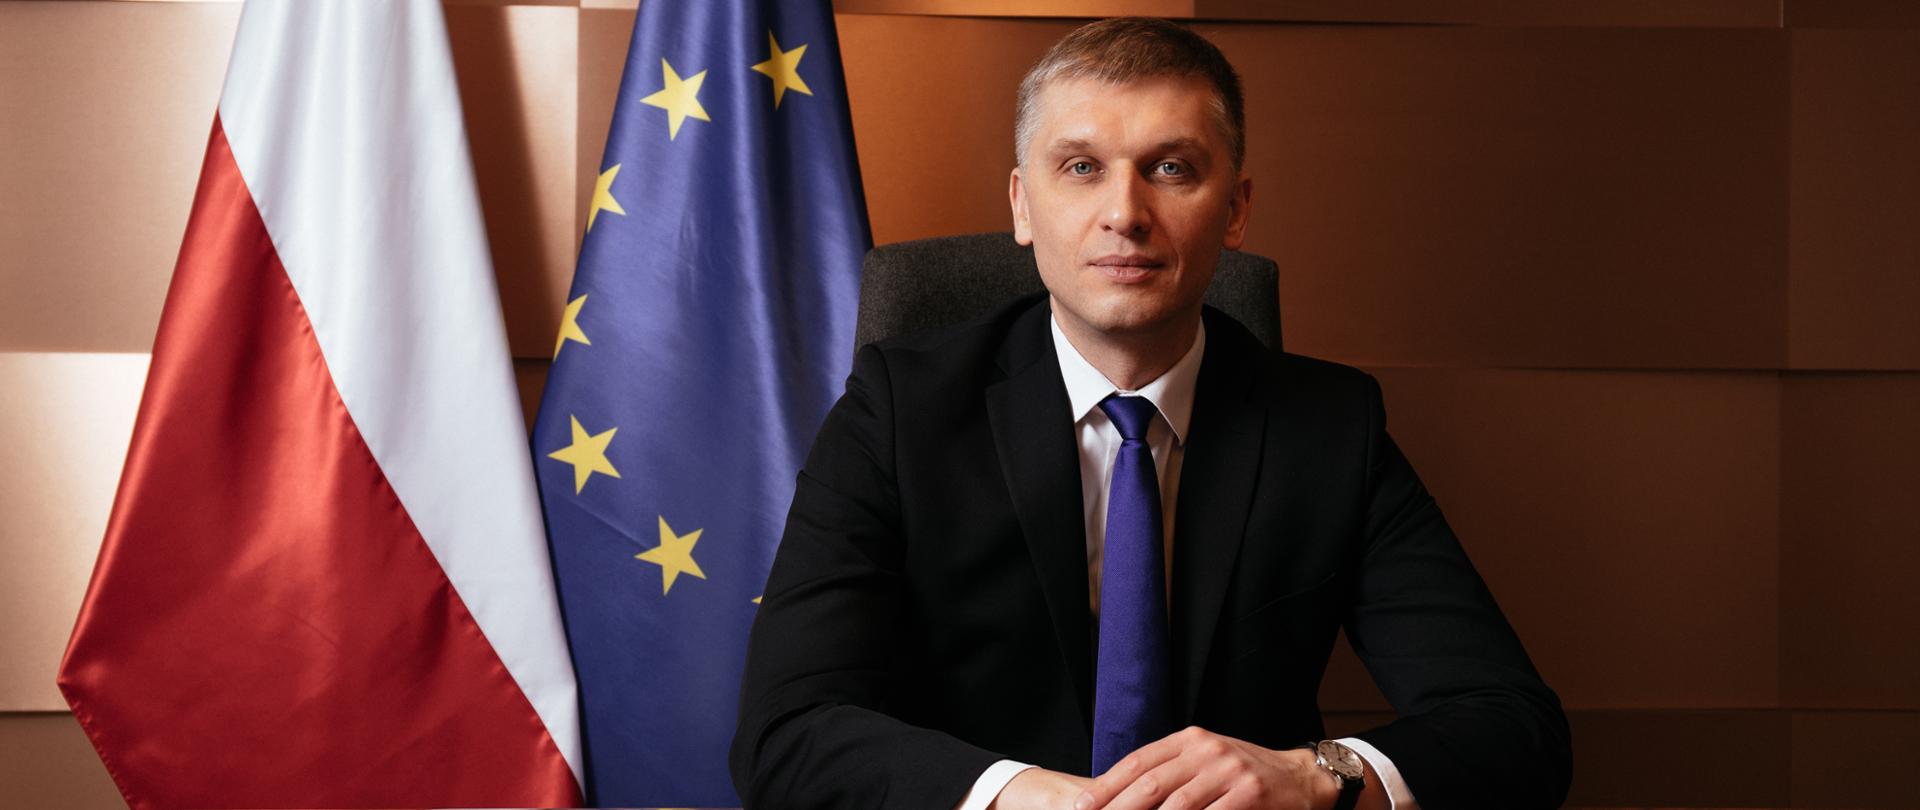 Na zdjęciu Minister Rozwoju i Technologii Piotr Nowak - siedzi za stołem, patrzy w obiektyw, w tle flagi Polski i Unii Europejskiej